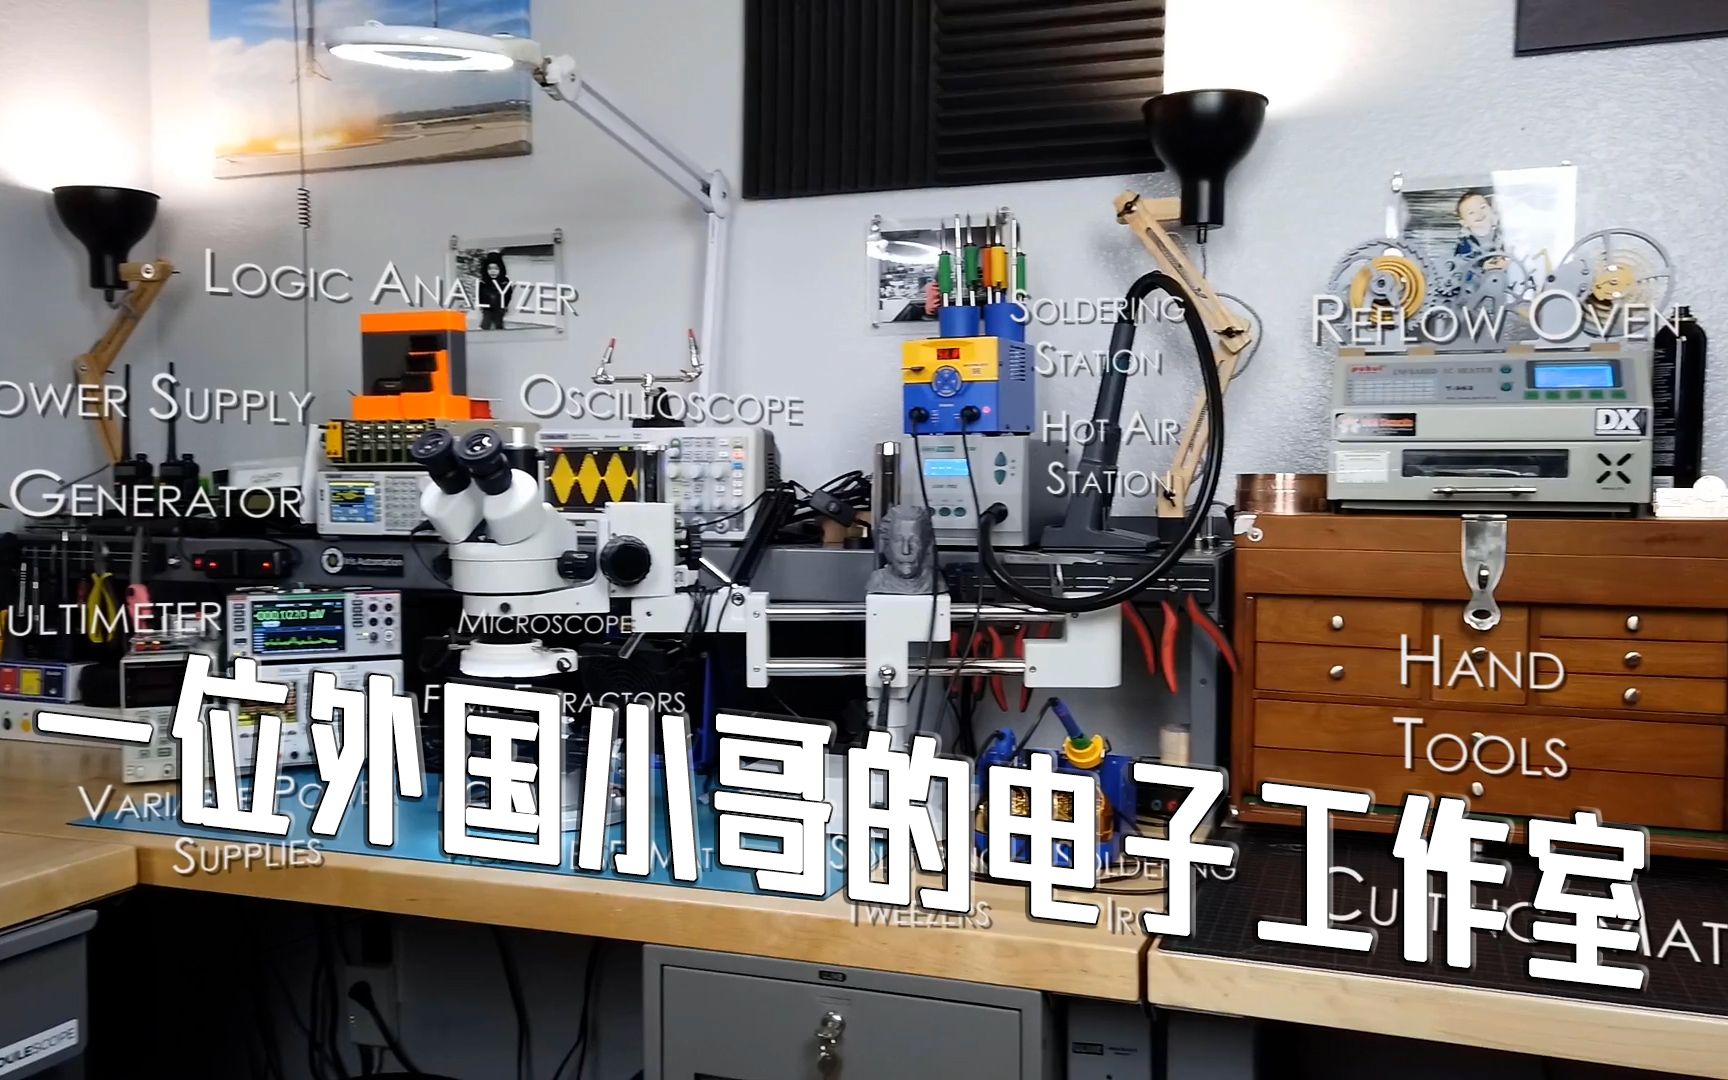 【Lab Tour】看看外国小哥的电子工作室实验室